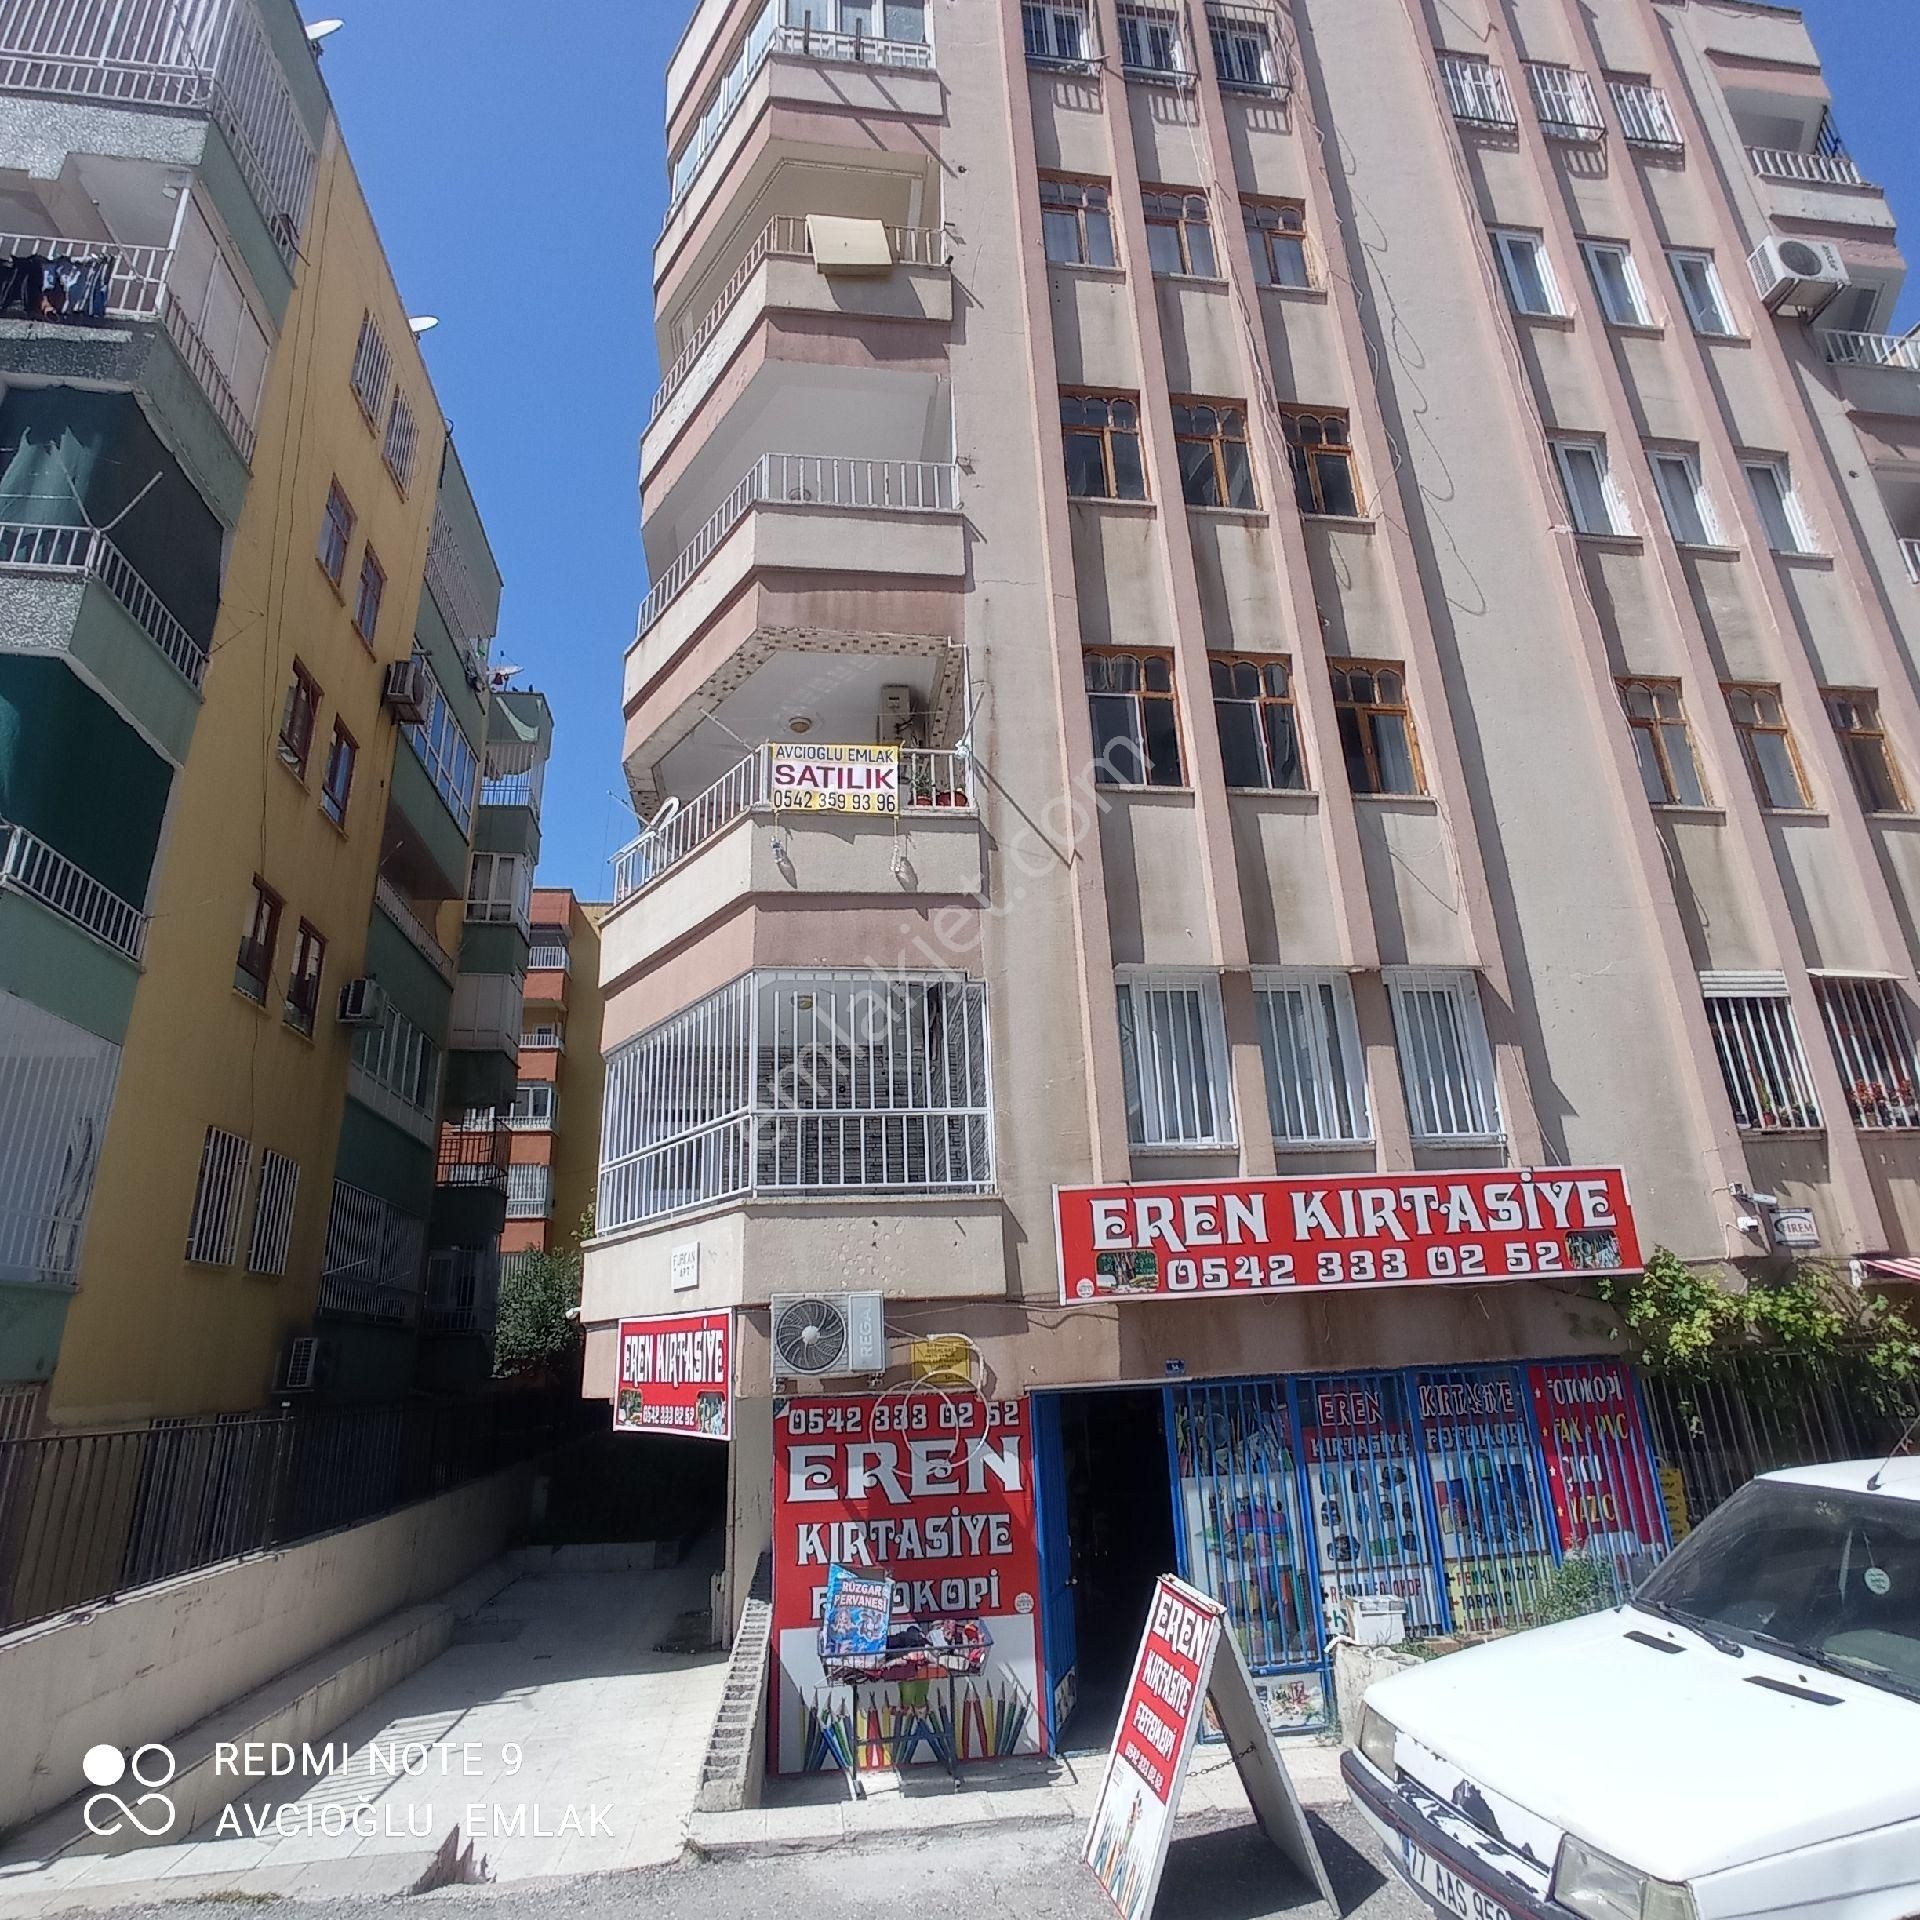 Haliliye Veysel Karani Satılık Daire Avcıoğlu emlâk'tan satılık 3+1 arakat daire 